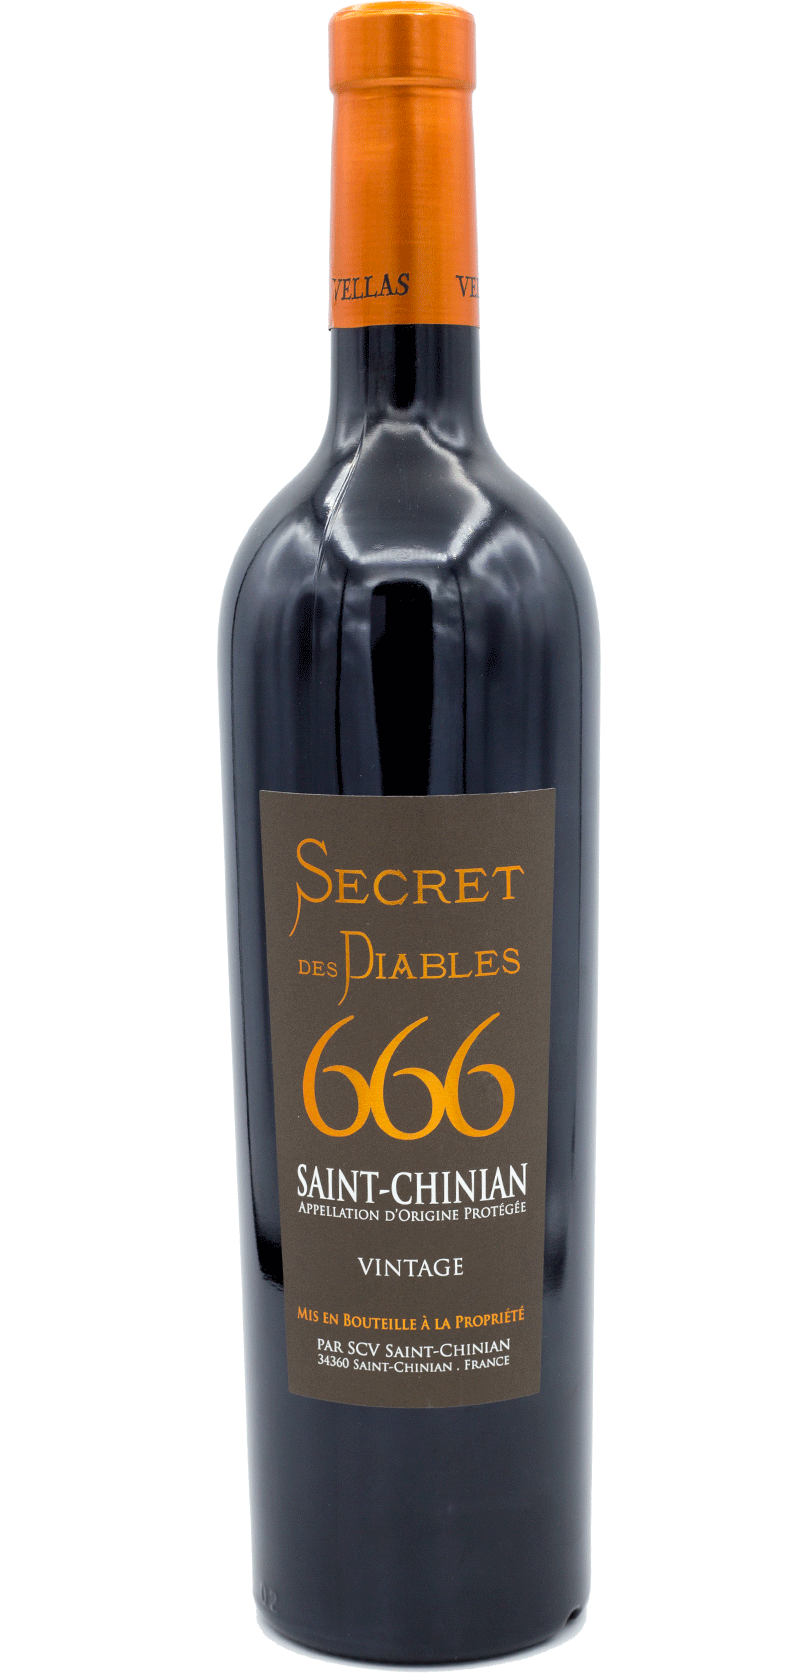 Secret des Diables 666 - Rouge - Saint-Chinian